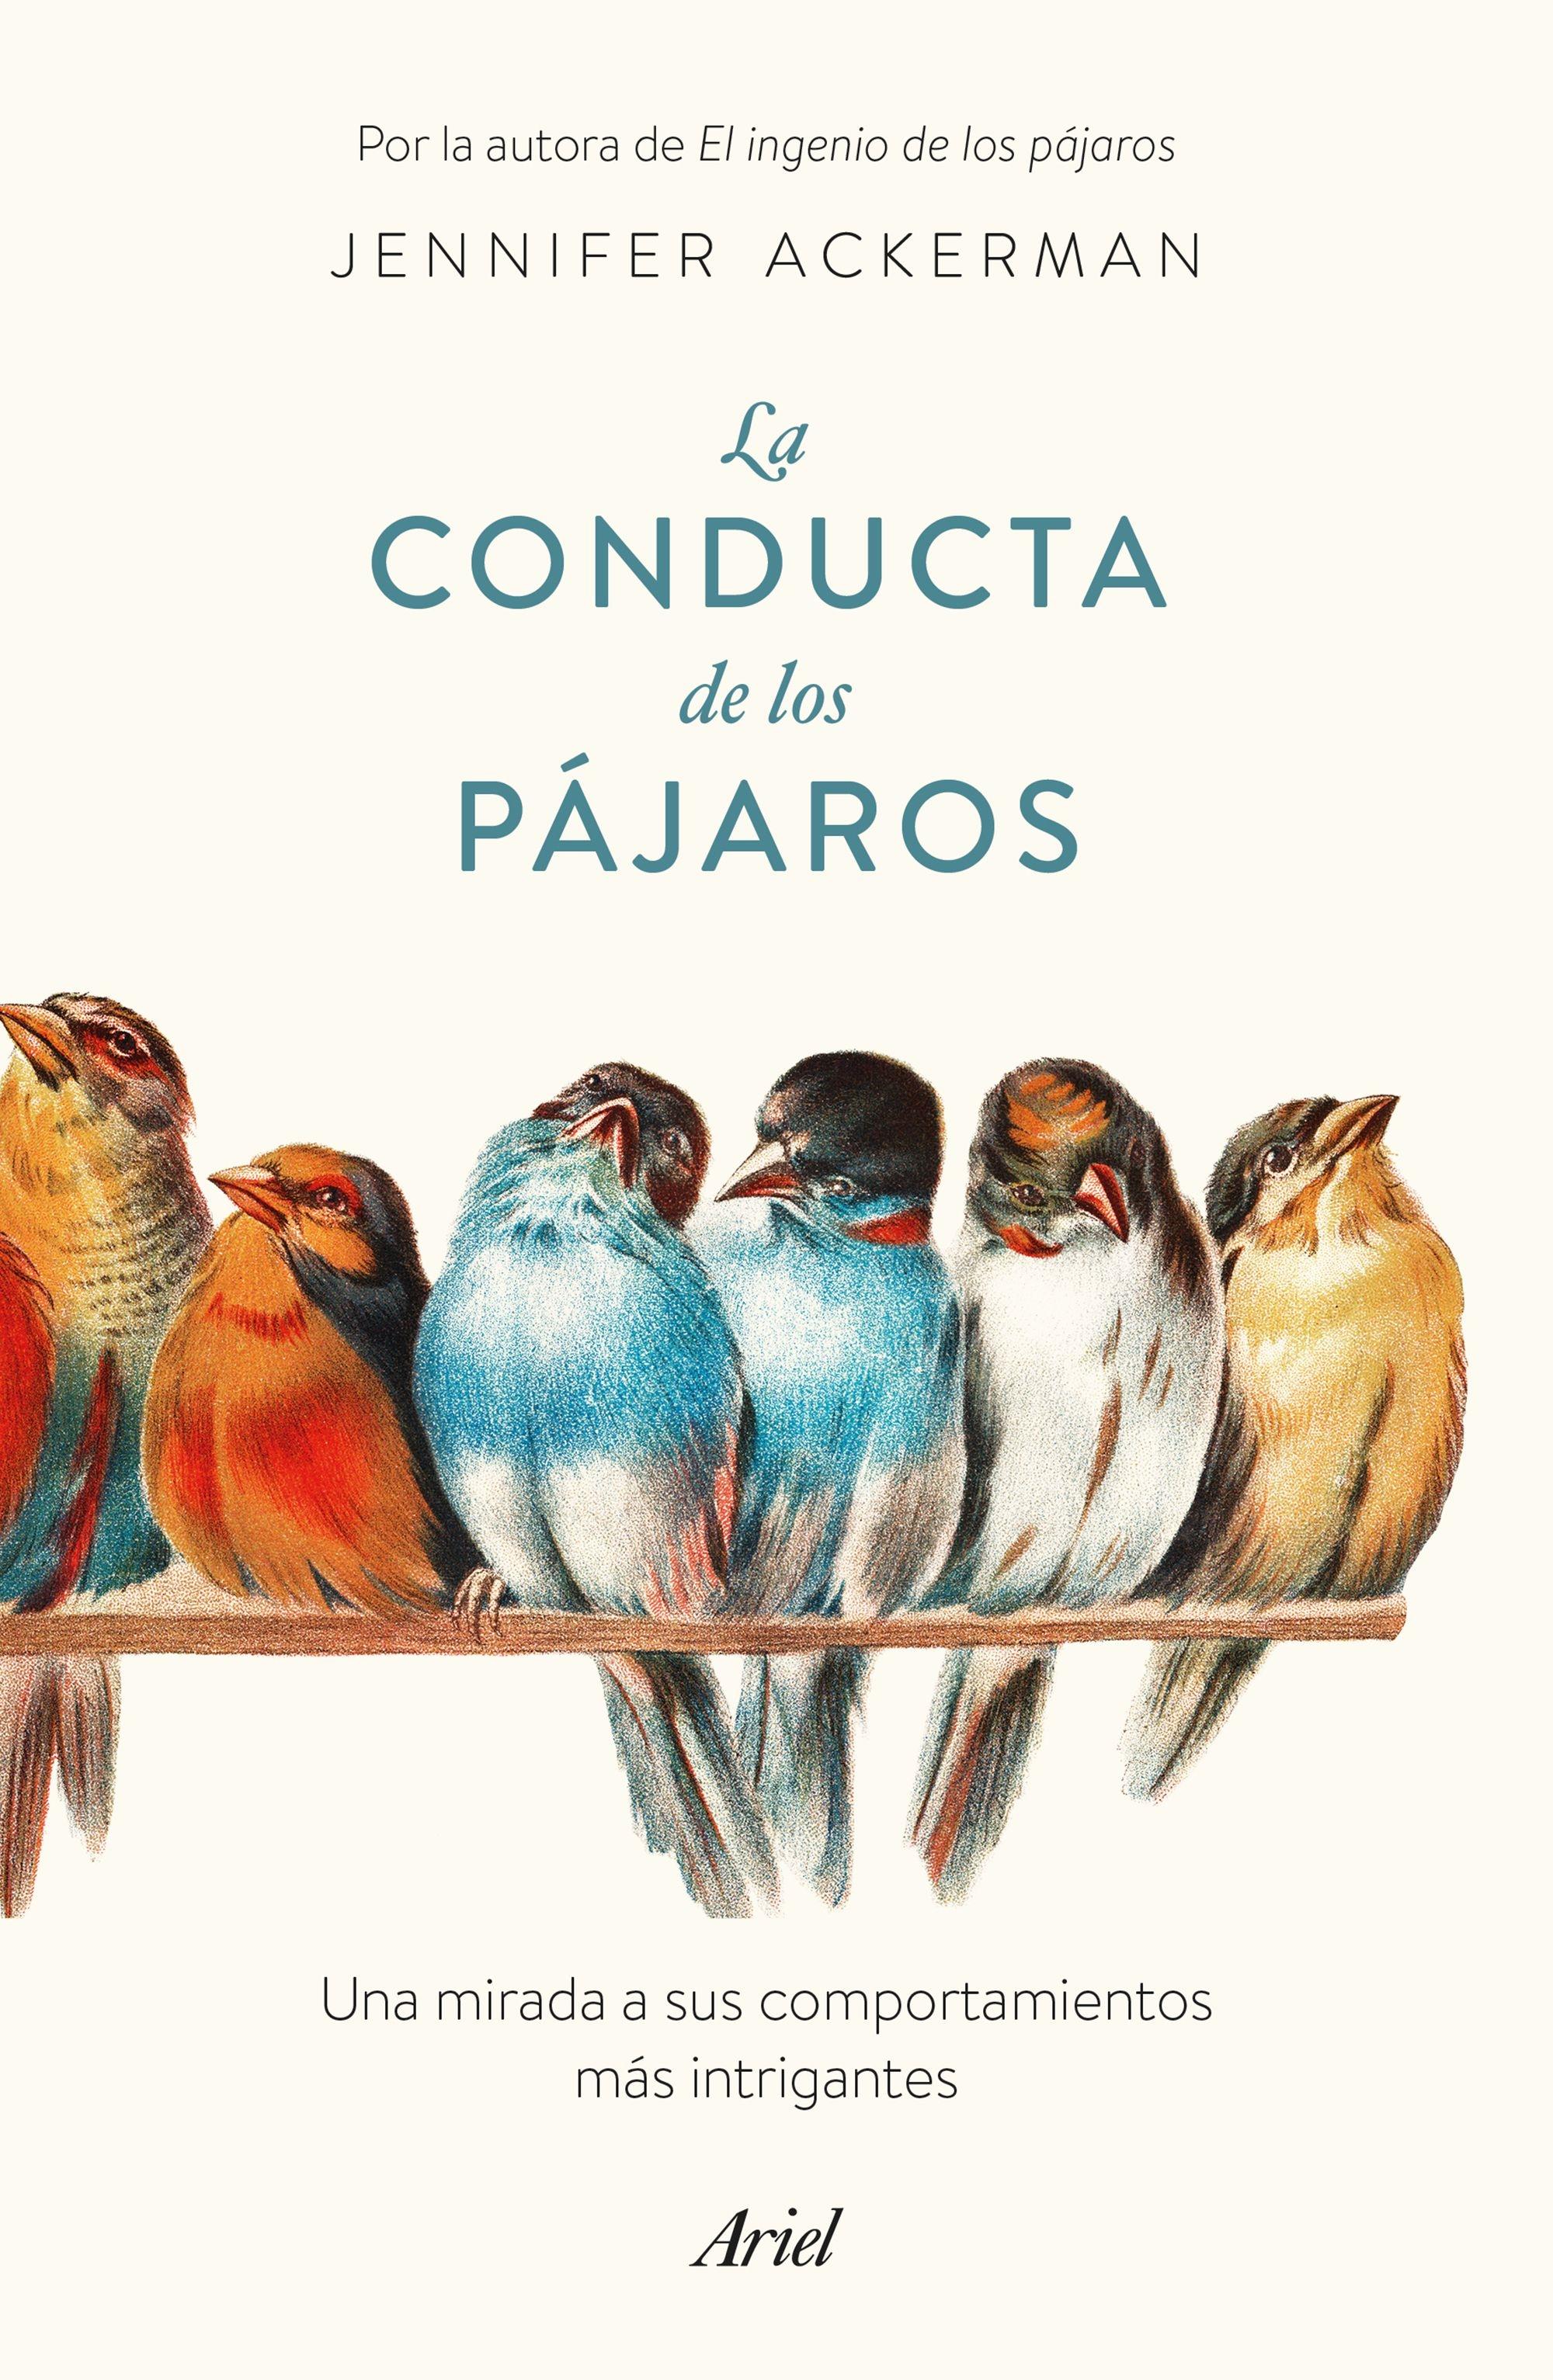 Conducta de los pájaros, La "Una mirada a sus comportamientos más intrigantes"